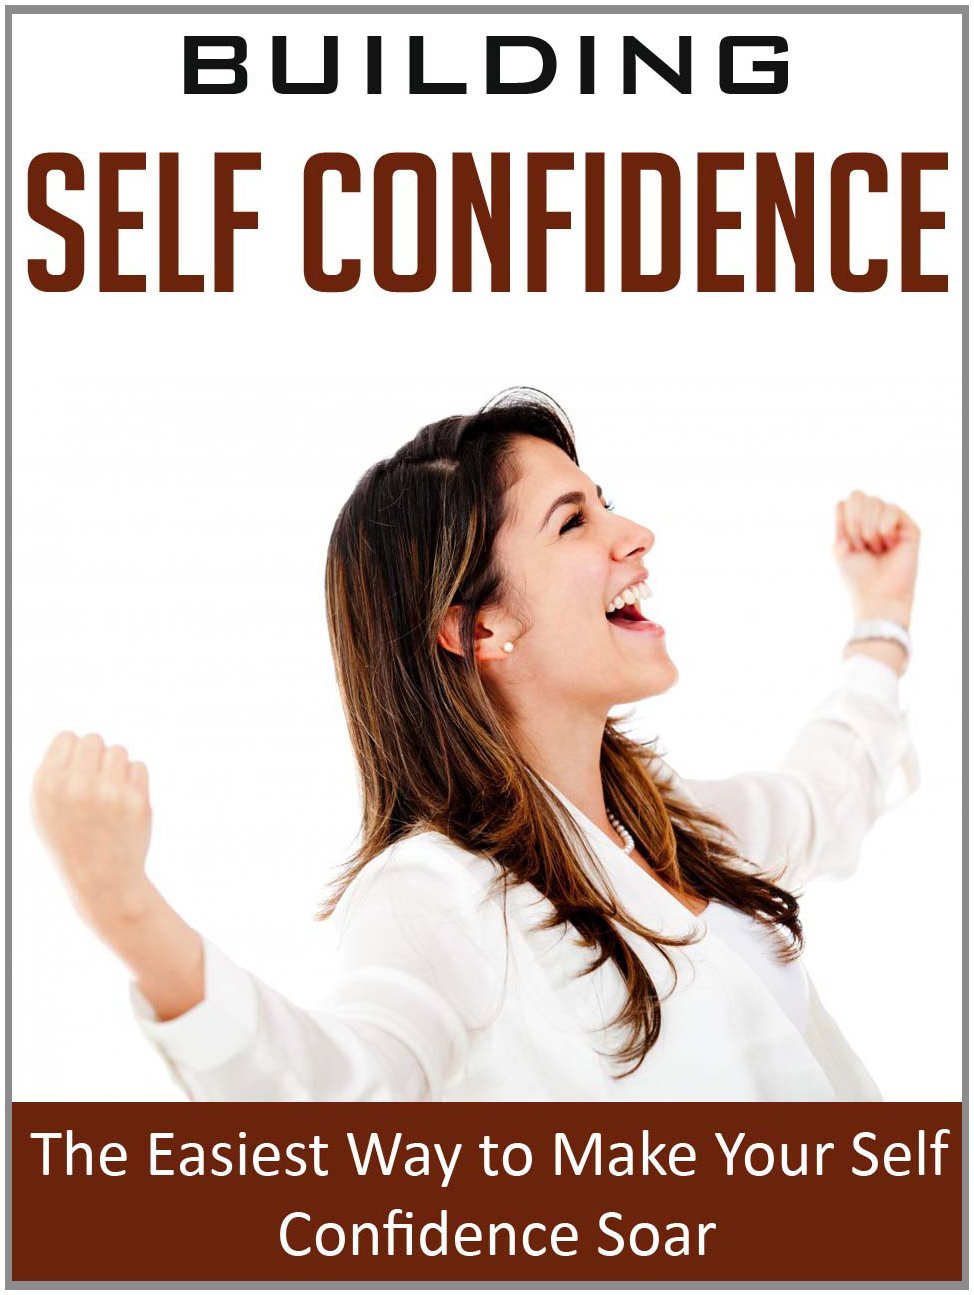 Building Self Confidence by John Dunn